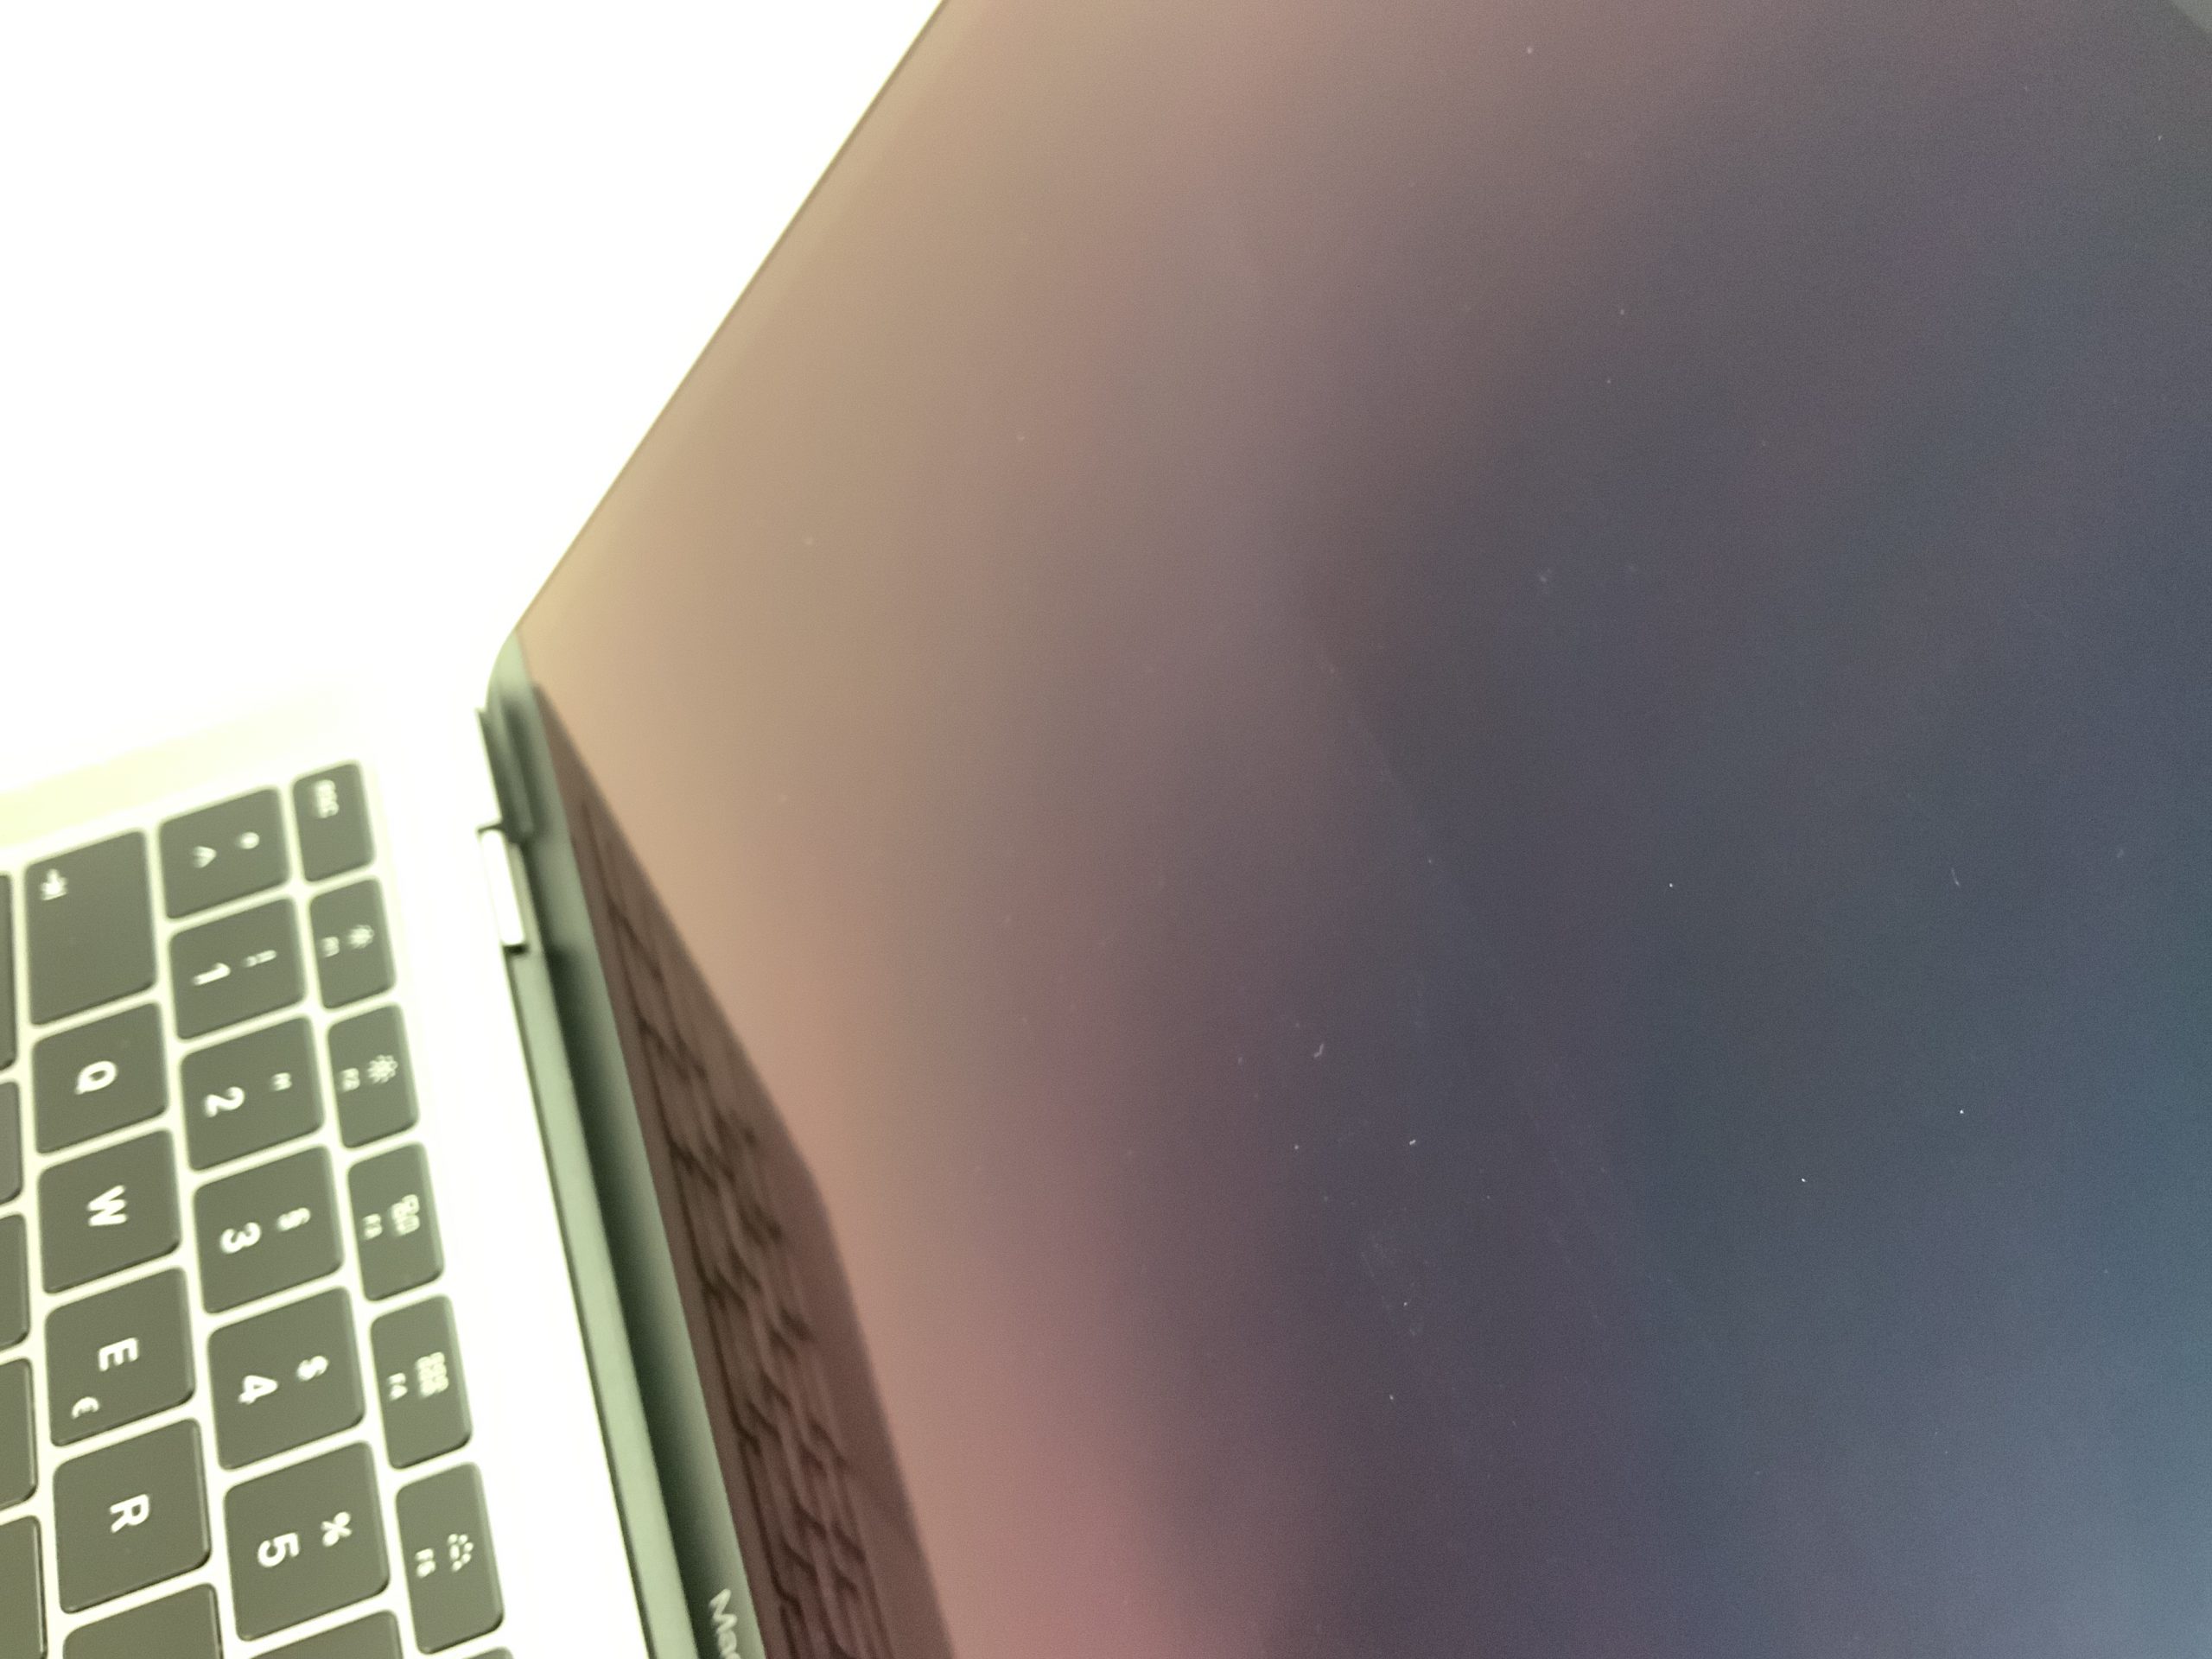 MacBook Air 13" Mid 2019 (Intel Core i5 1.6 GHz 8 GB RAM 512 GB SSD), Space Gray, Intel Core i5 1.6 GHz, 8 GB RAM, 512 GB SSD, Bild 2